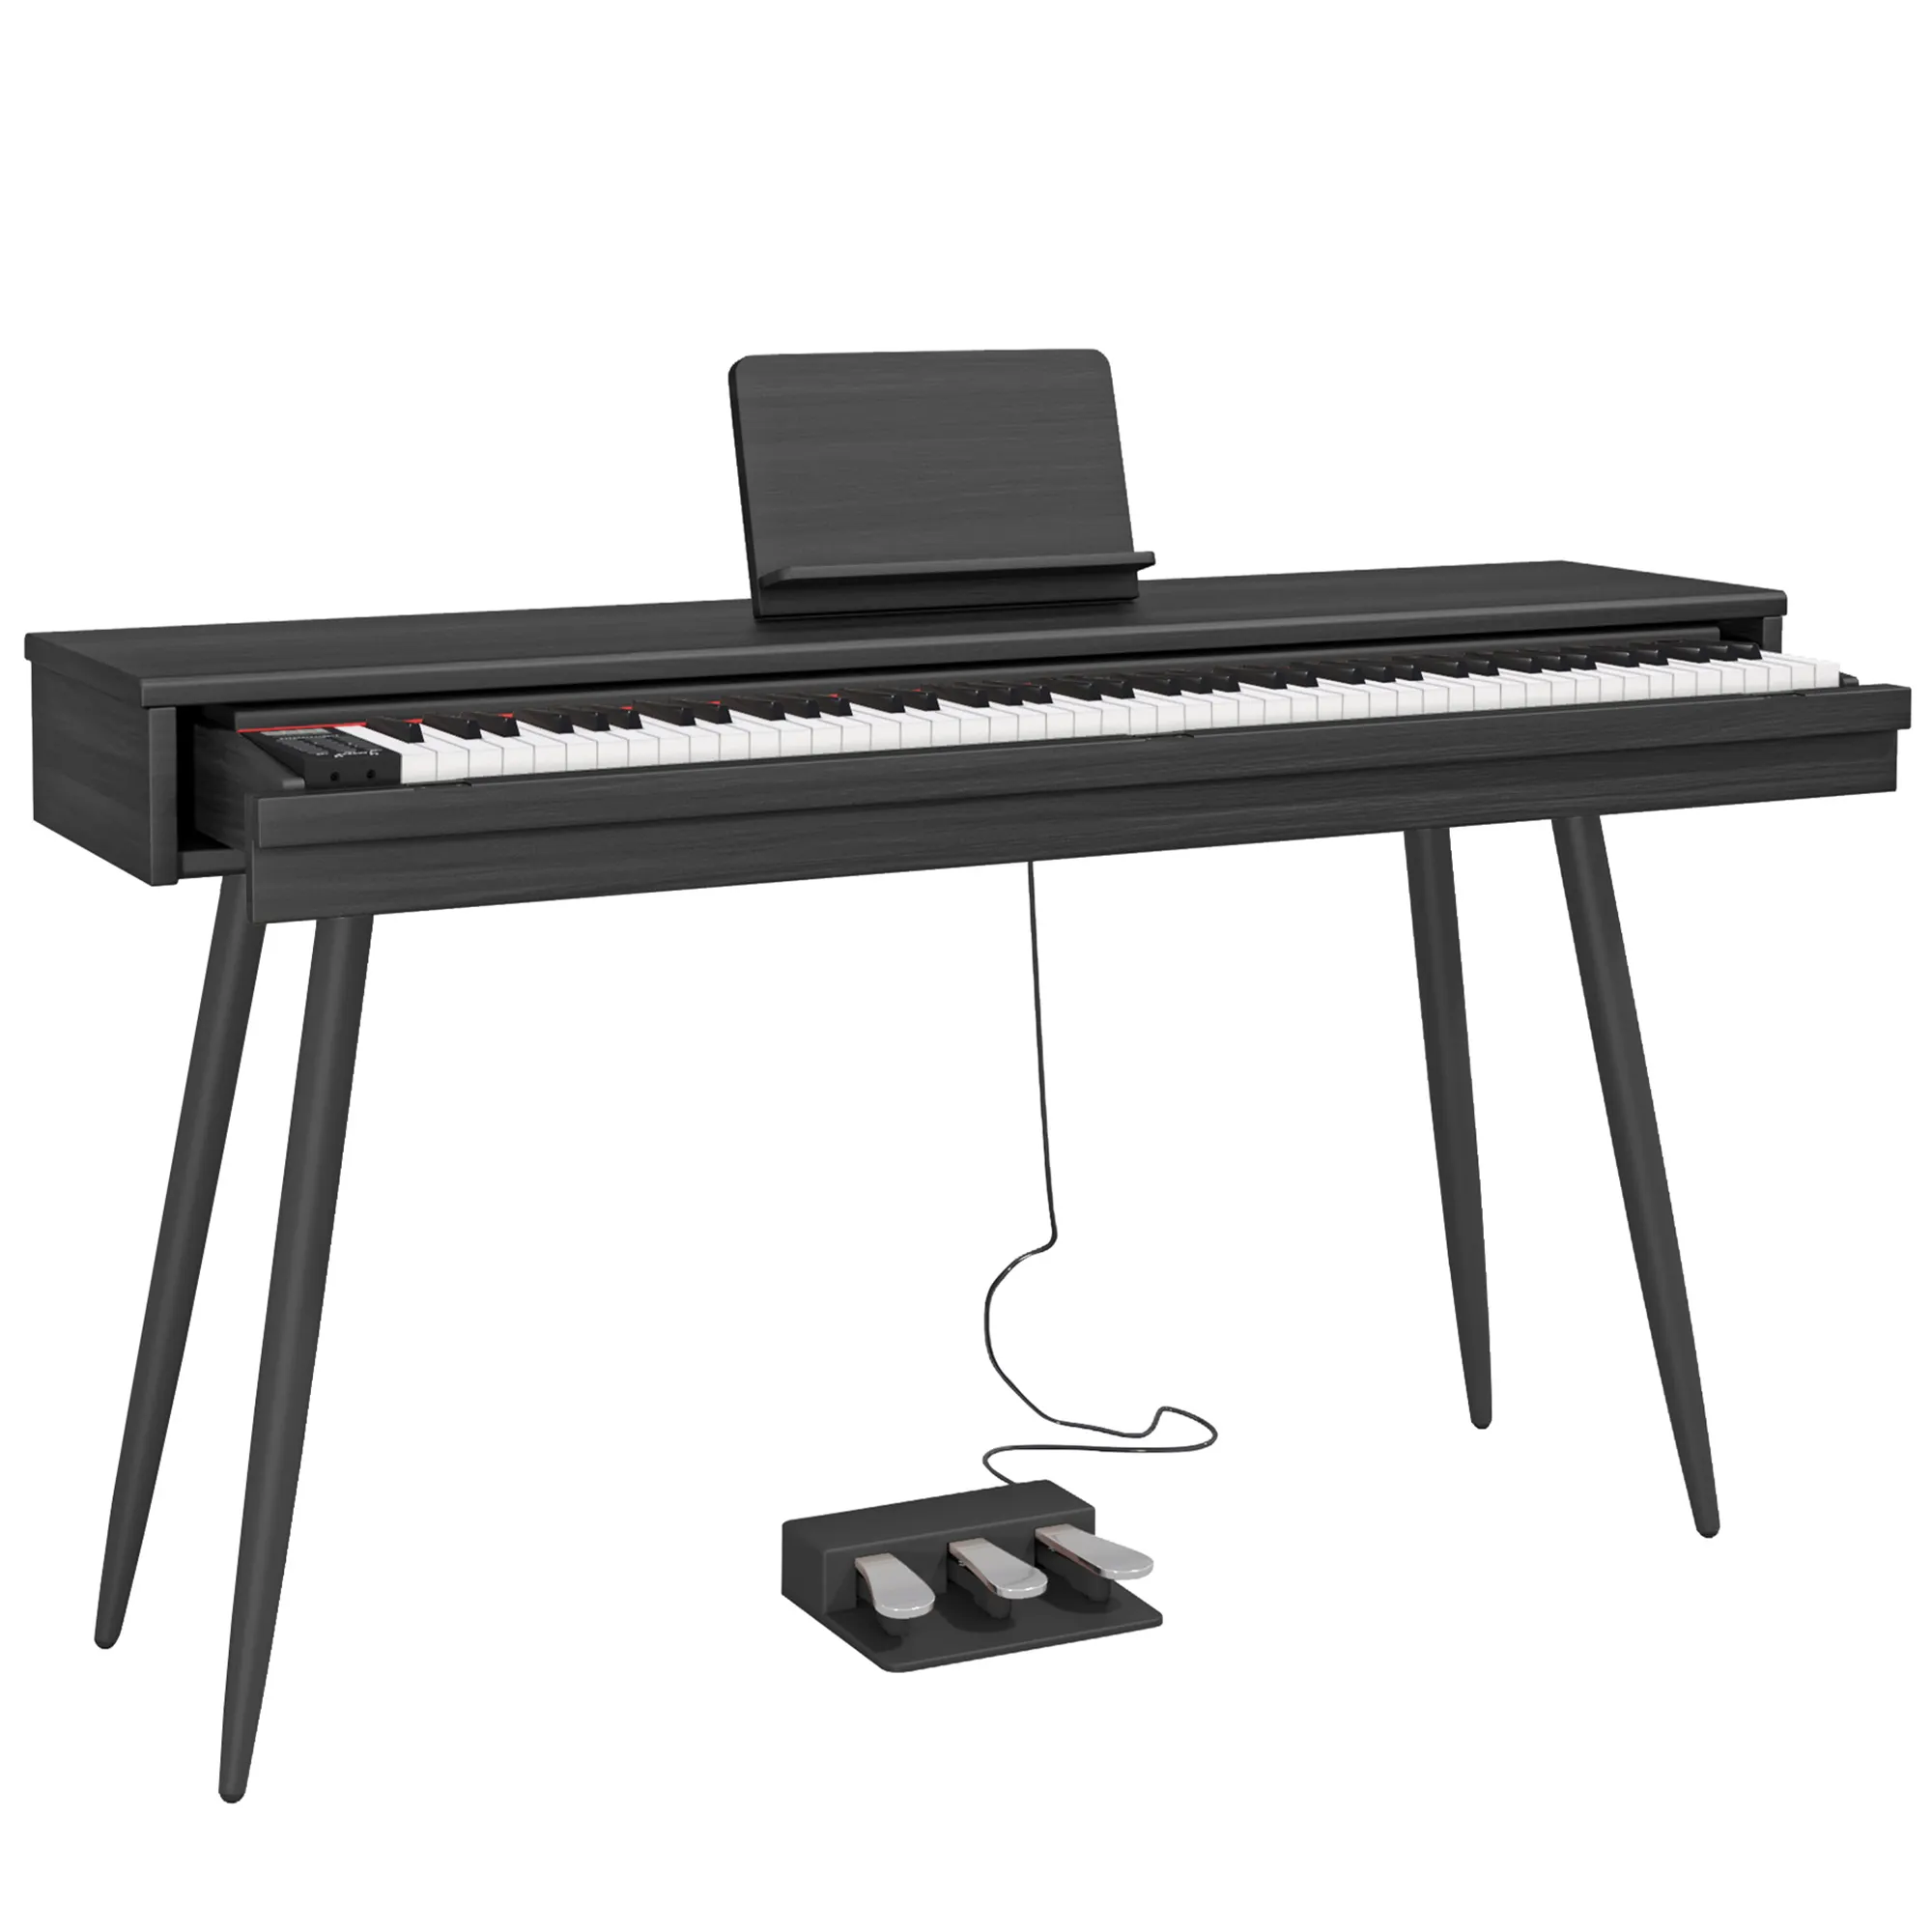 BLANTH引き出しピアノキーボード電子ピアノデジタルピアノ電気楽器